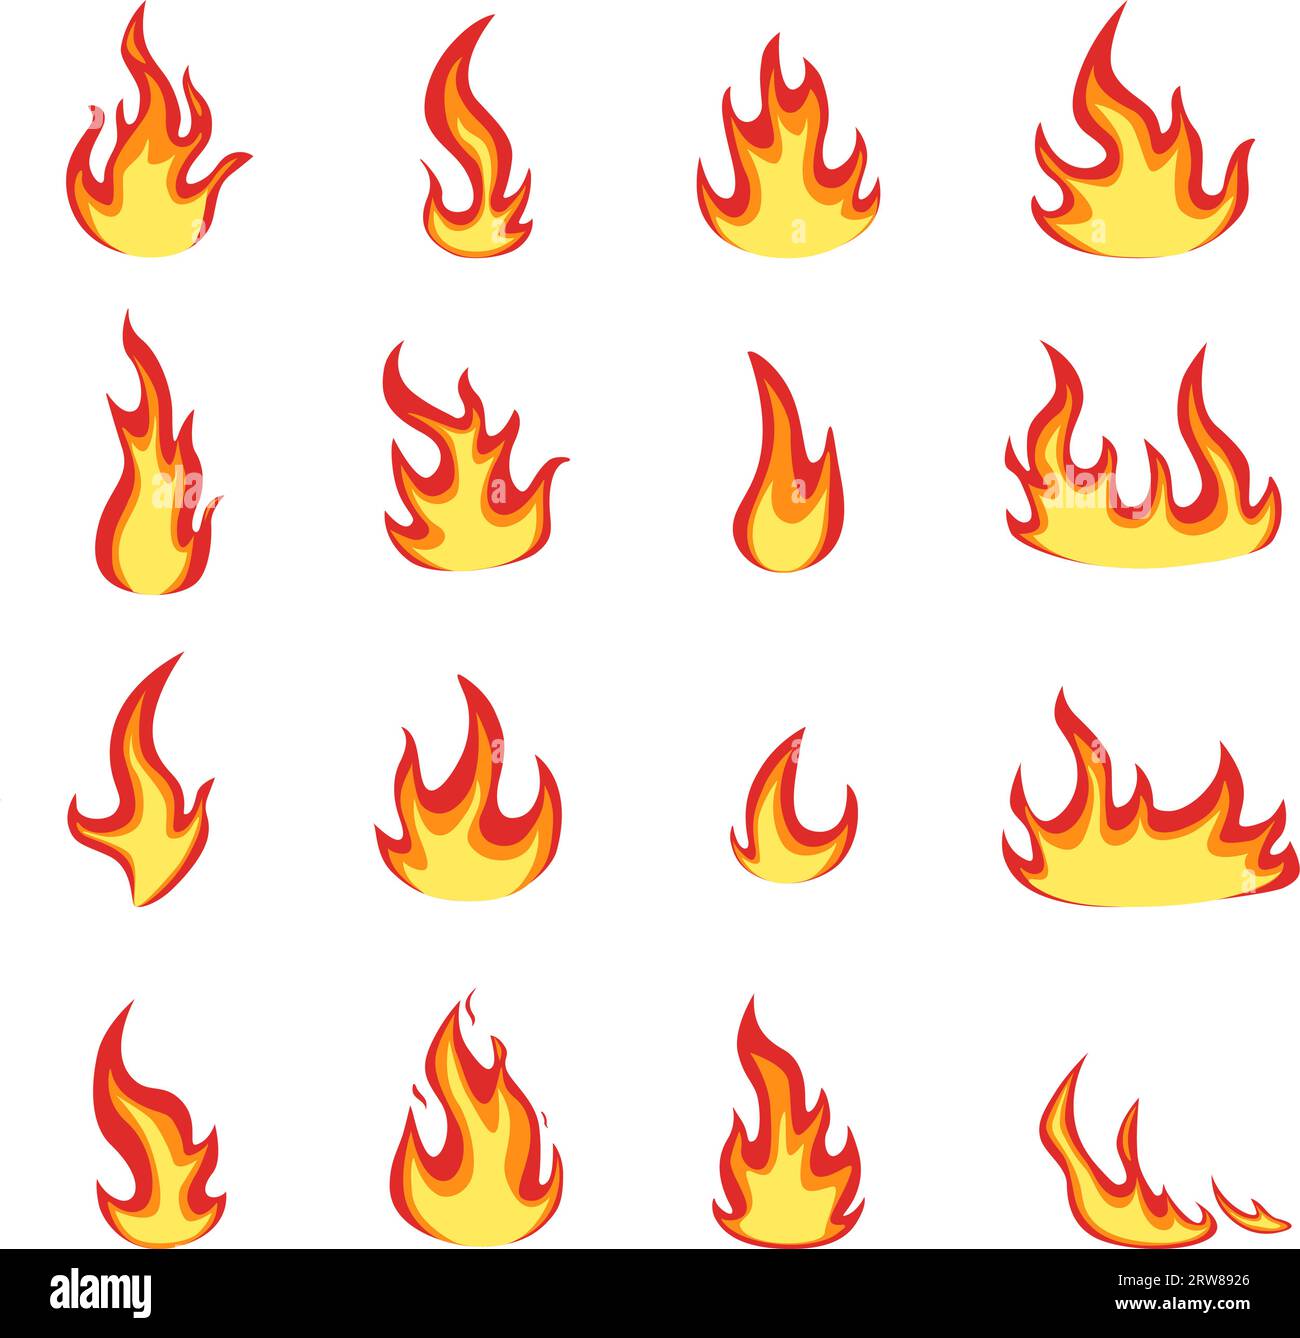 Symbole für isolierte Flammen. Comic-Flammen und Feuer-Logo, Lagerfeuer-Effekt. Warme oder heiße Symbole für Wetter, Lebensmittel, Werkzeuge und Vektorset Stock Vektor